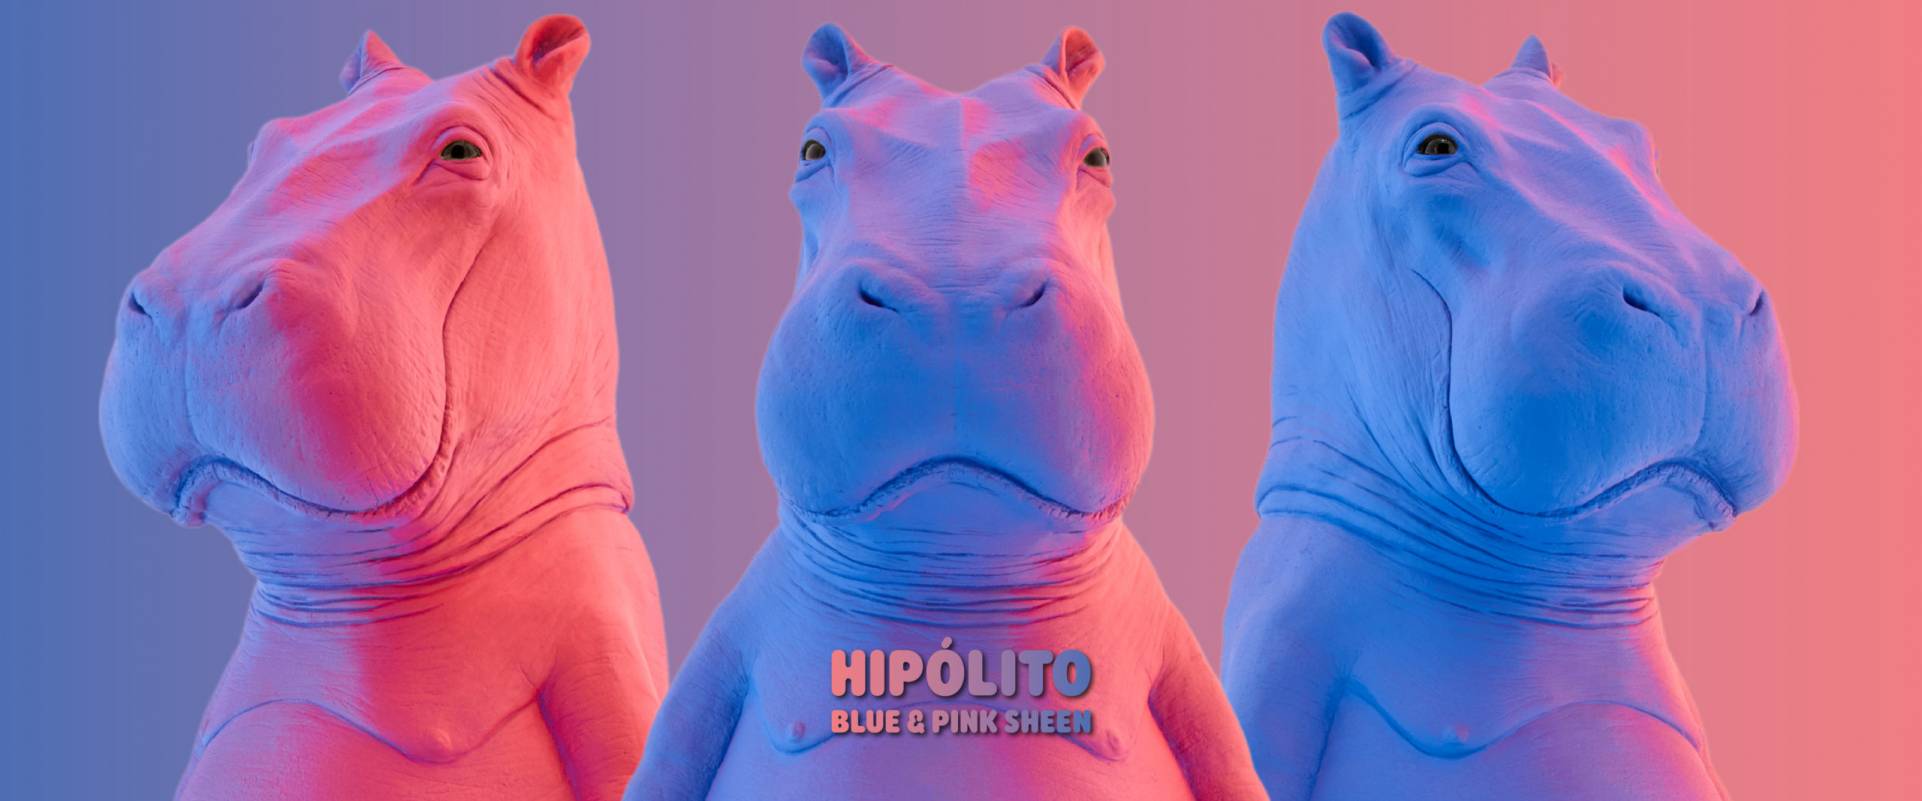 Hipolito Blue & Pink Sheen